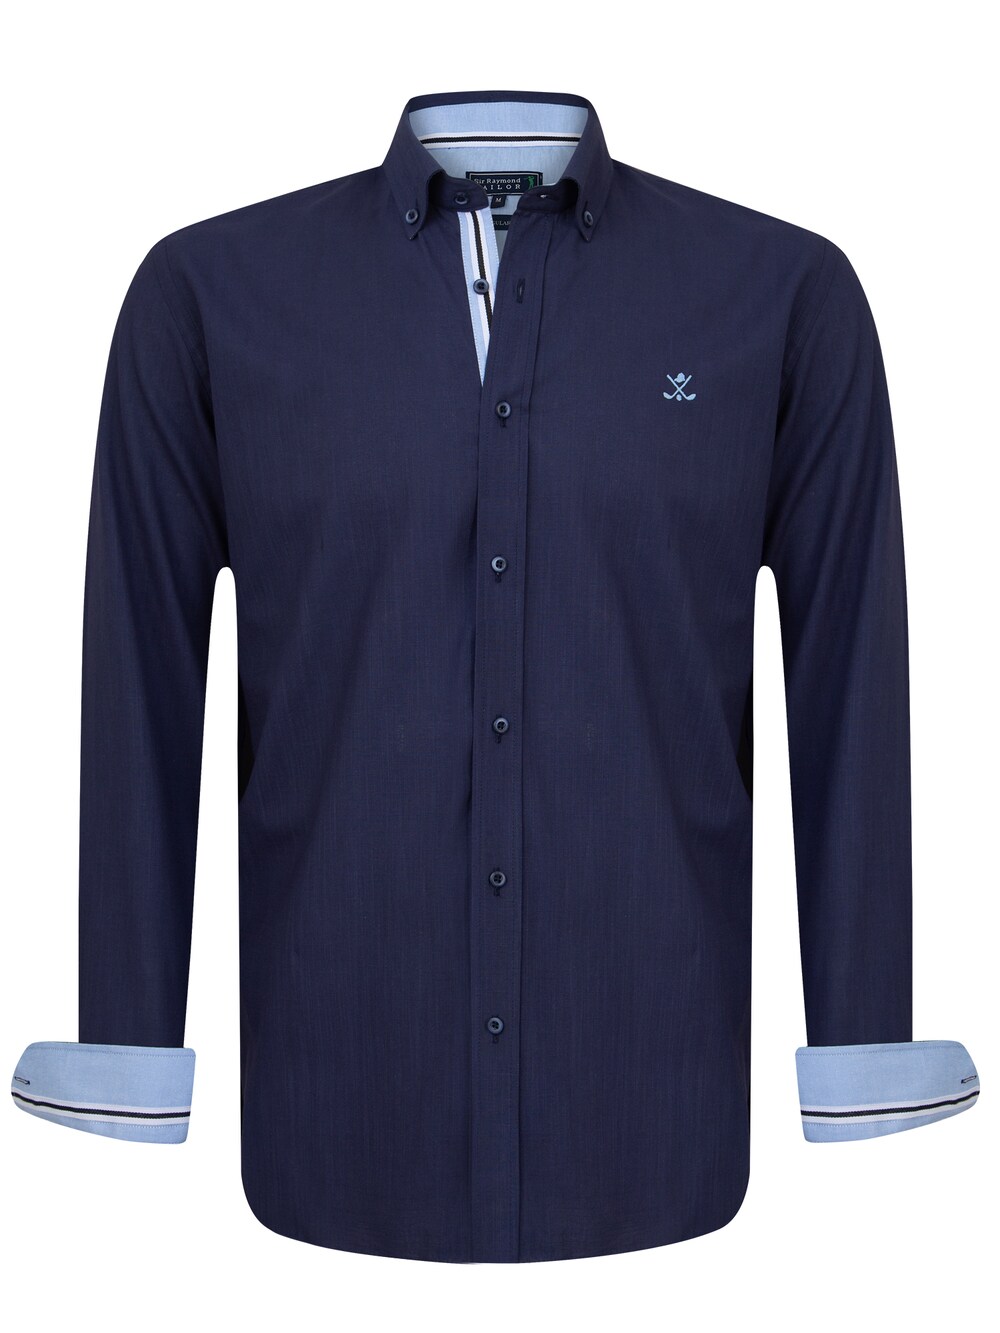 цена Рубашка на пуговицах стандартного кроя Sir Raymond Tailor Patty, темно-синий